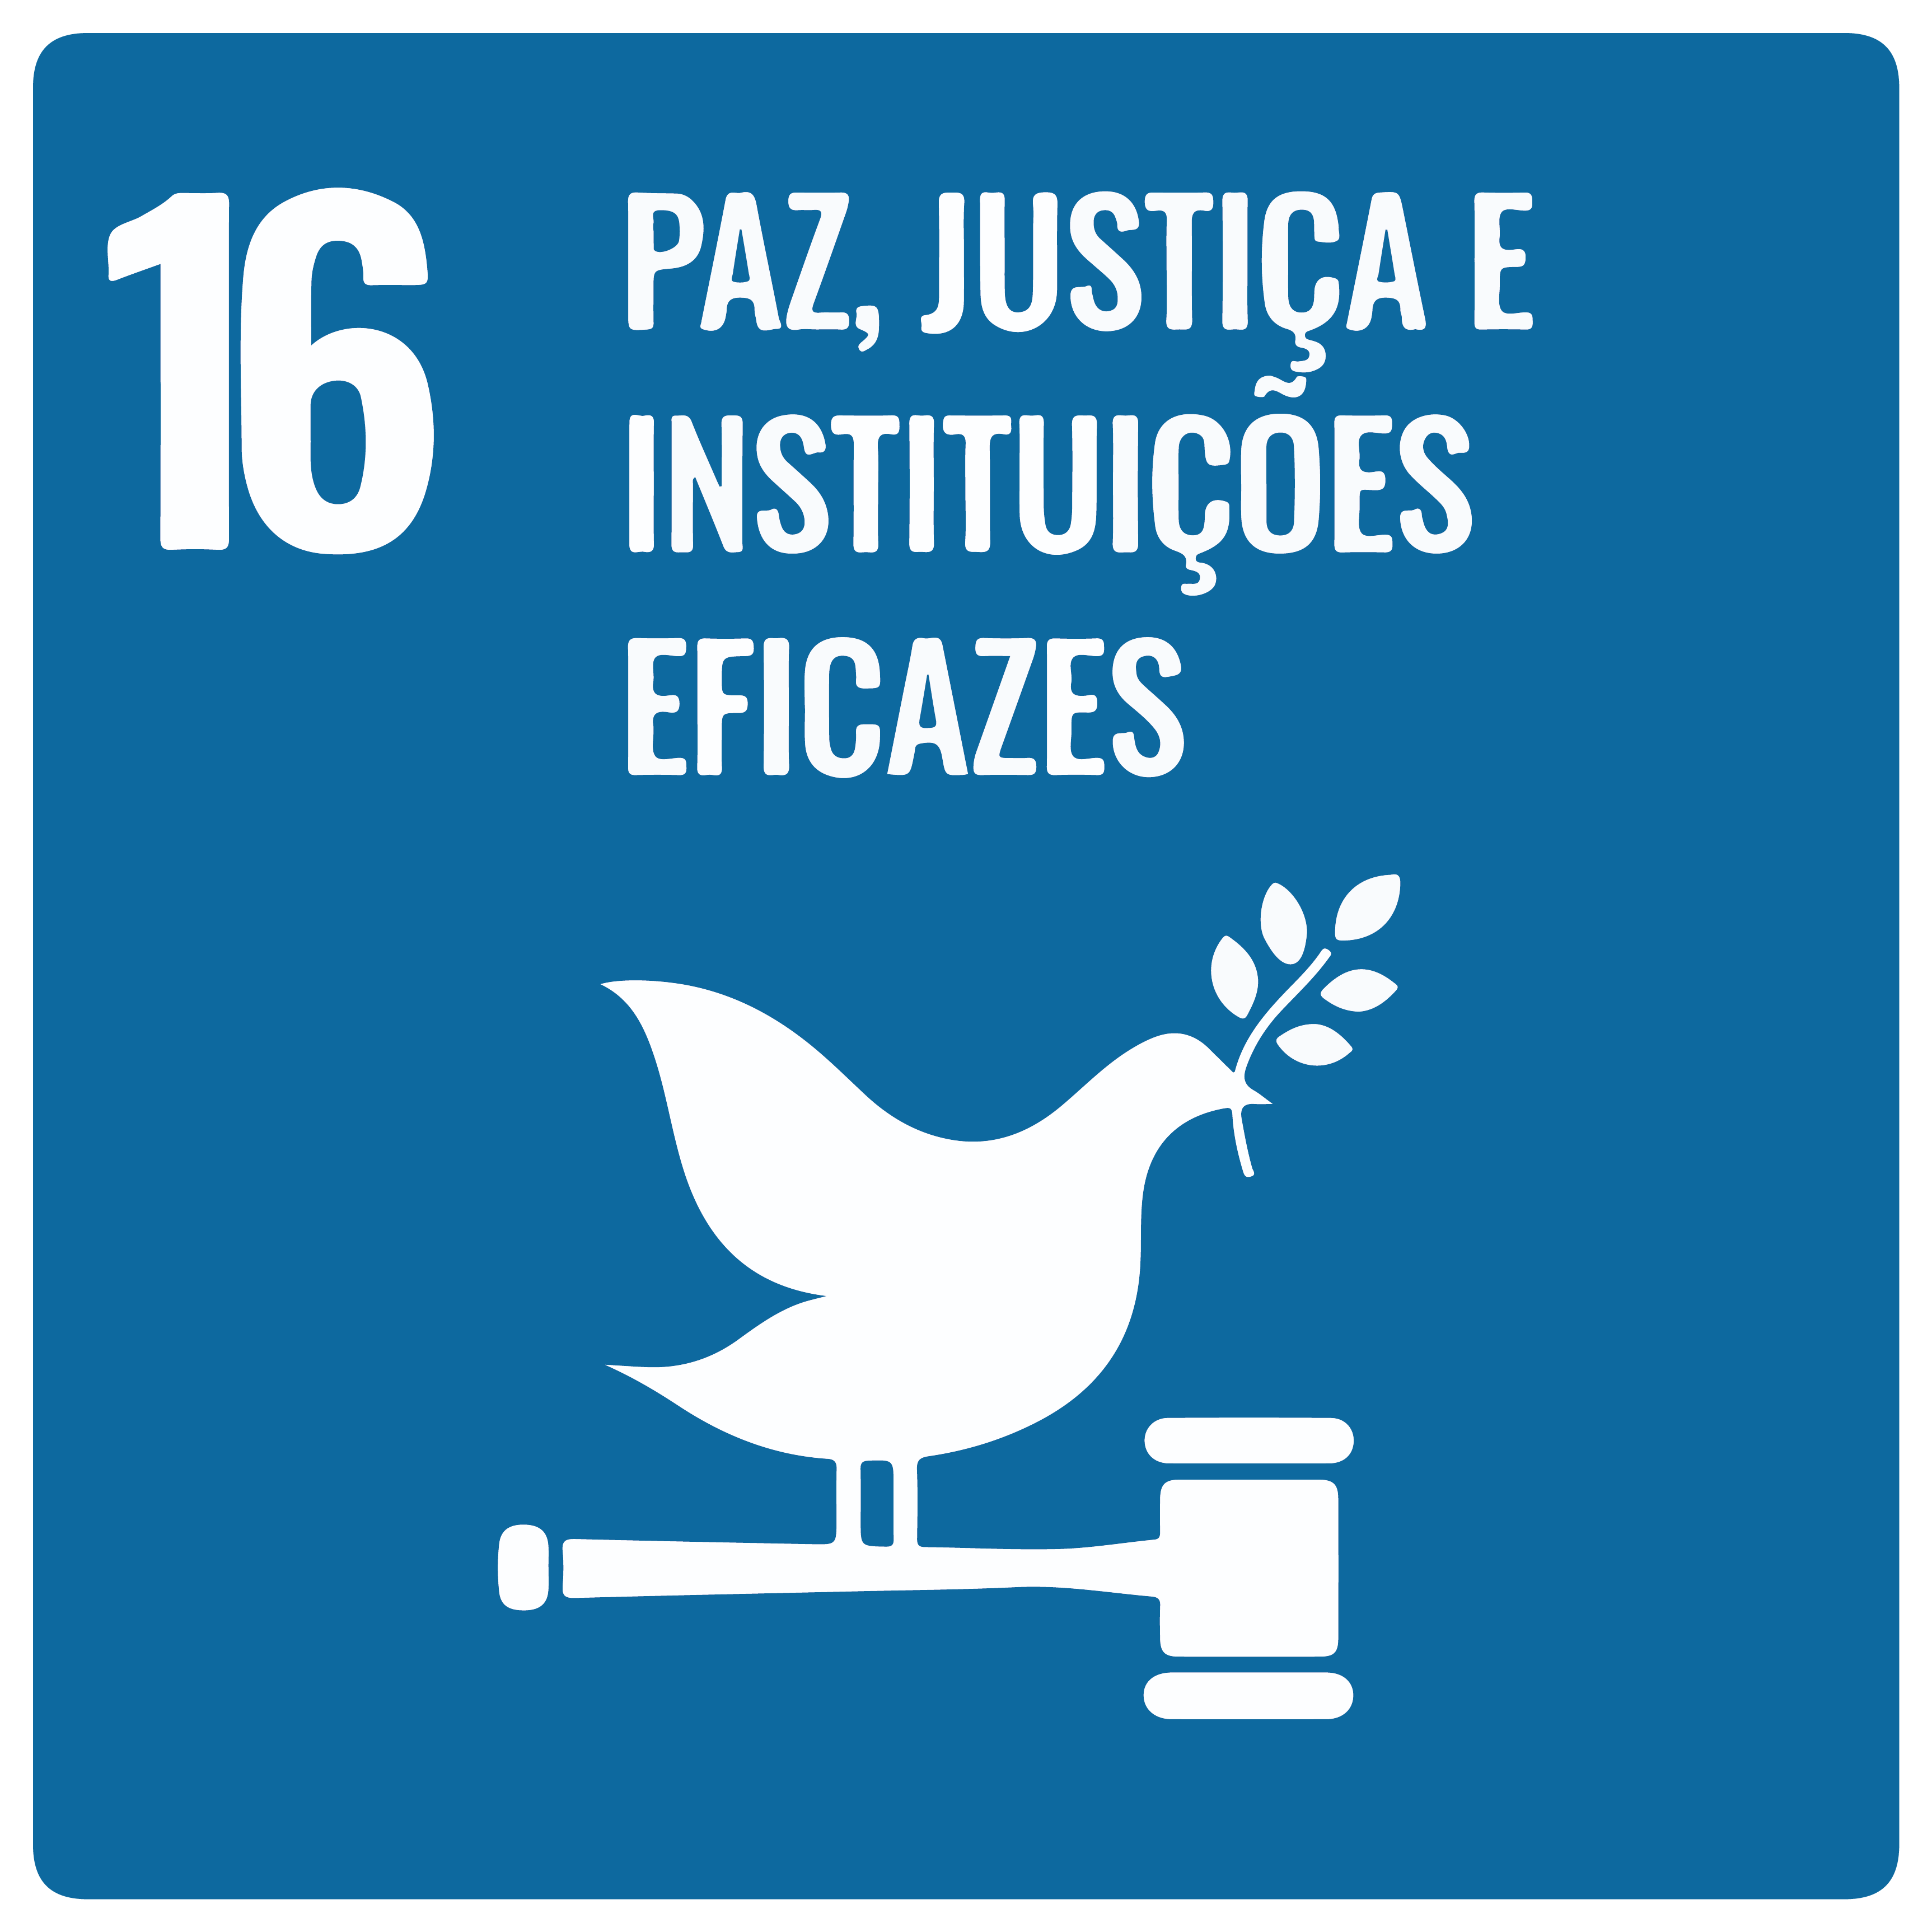 Na imagem, tem 16 da ODS: Paz, Justiça e Instituições Eficazes